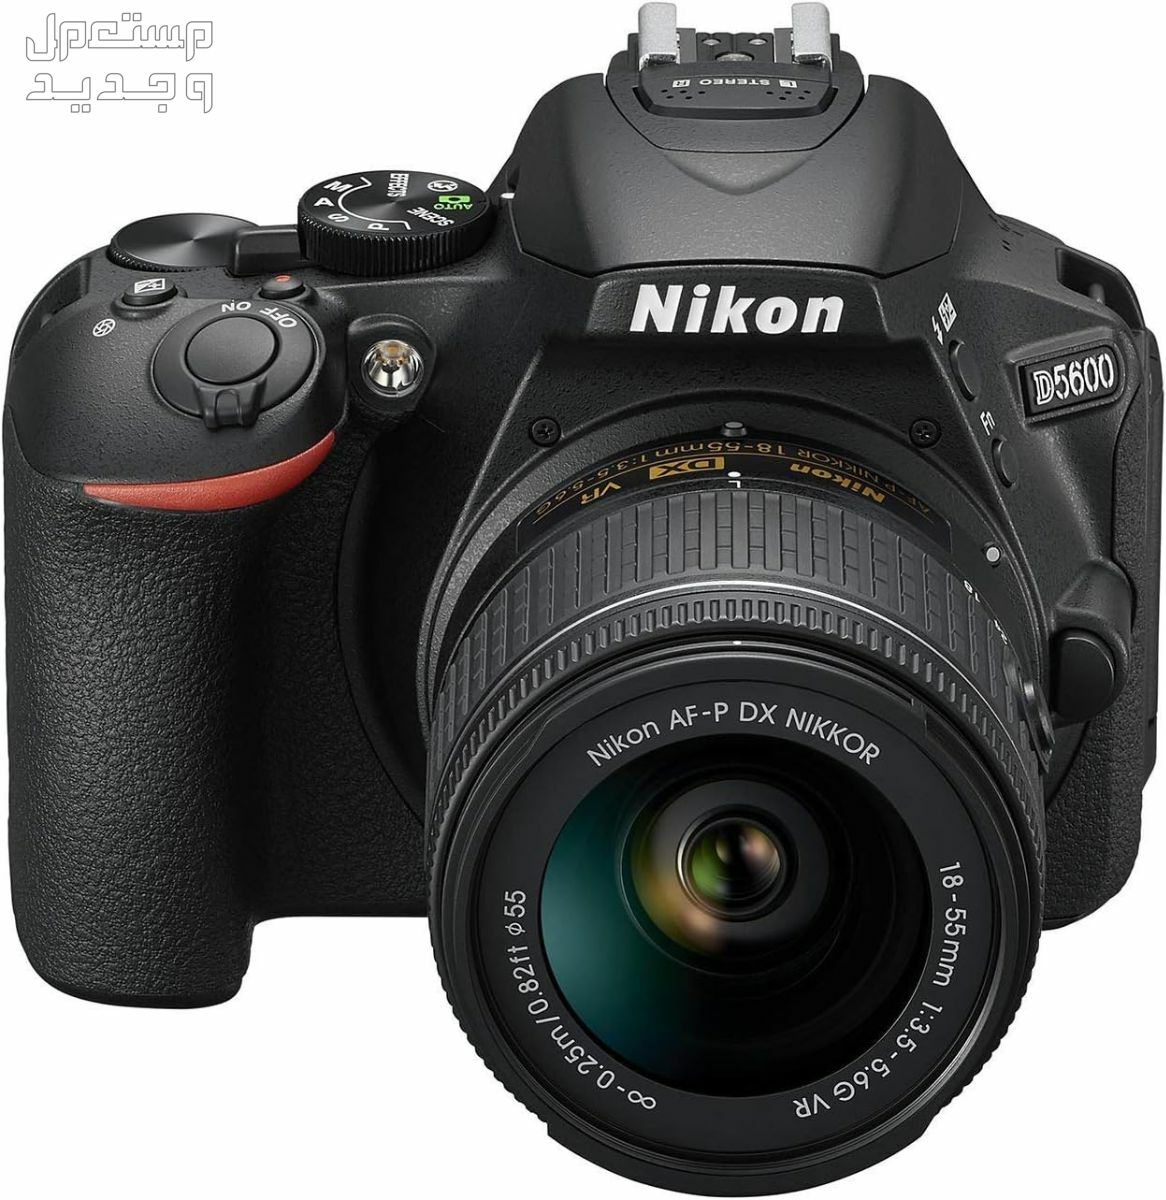 10 كاميرات تصوير ماركات عالمية بأسعار رخيصة في لبنان سعر كاميرا Nikon D5600